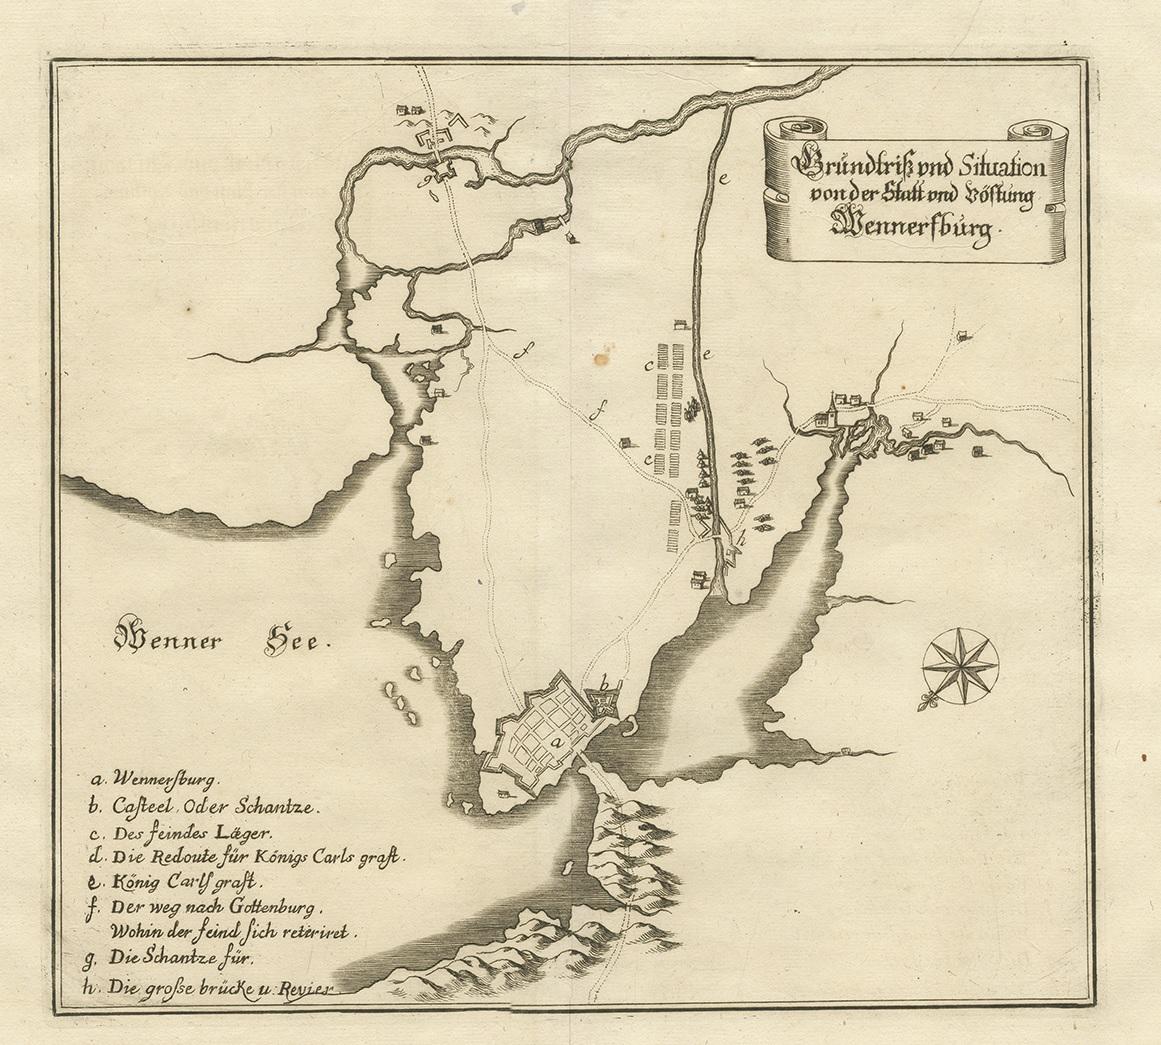 Antike Karte mit dem Titel 'Grundriss und Situation von der Statt und Vöstung Wennersburg'. Kupferstichplan von Vänersborg, Schweden. Diese Karte stammt aus dem 